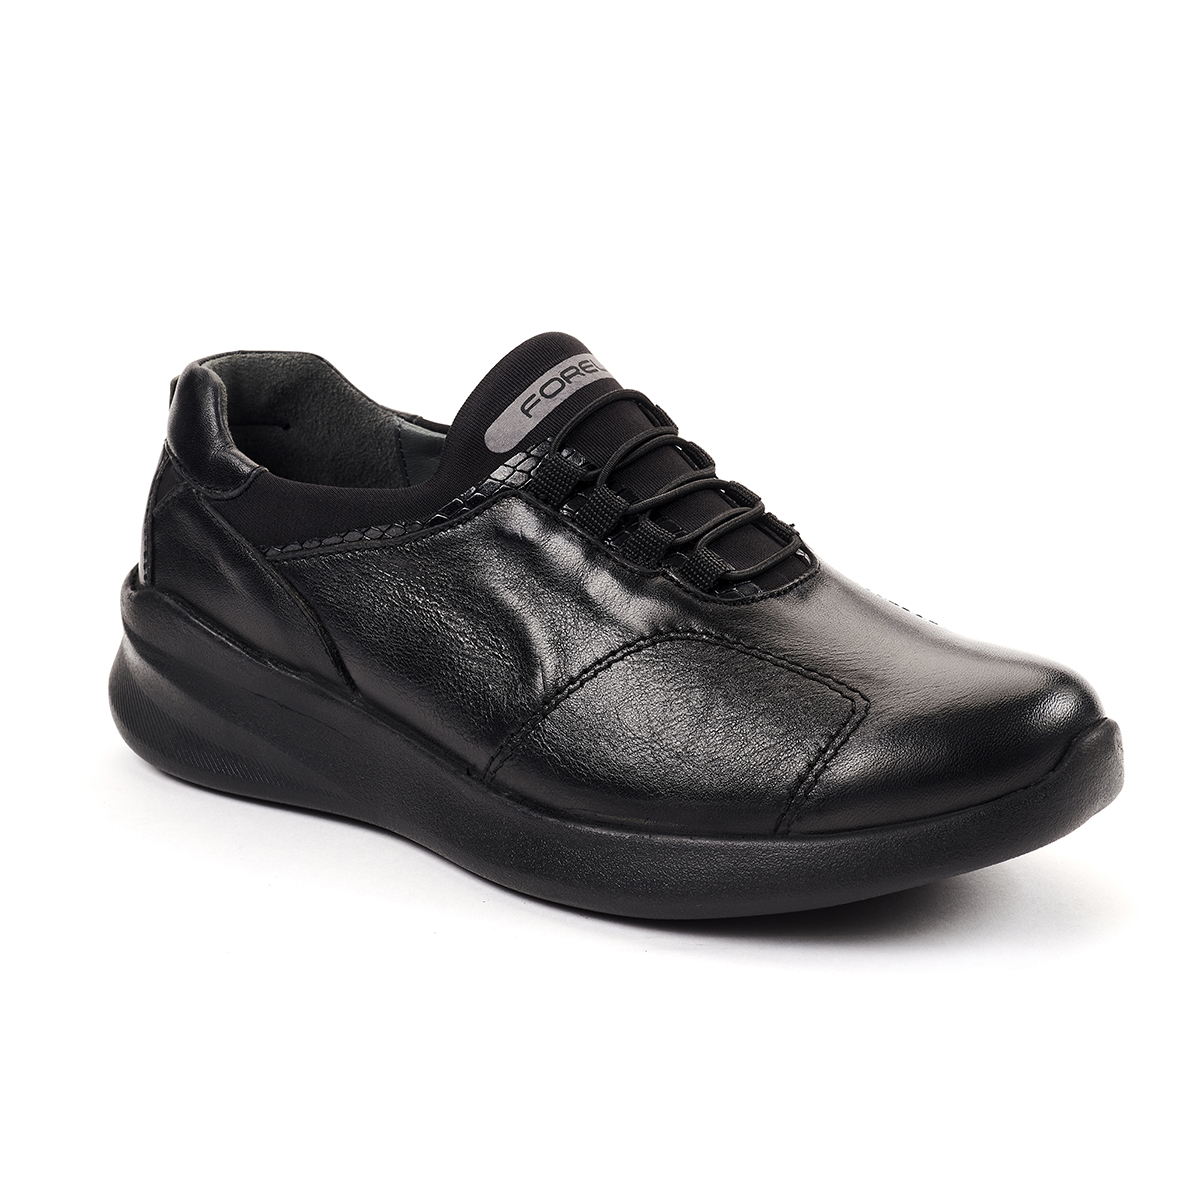 Forelli - Forelli SANDRA-G Comfort Kadın Ayakkabı Siyah